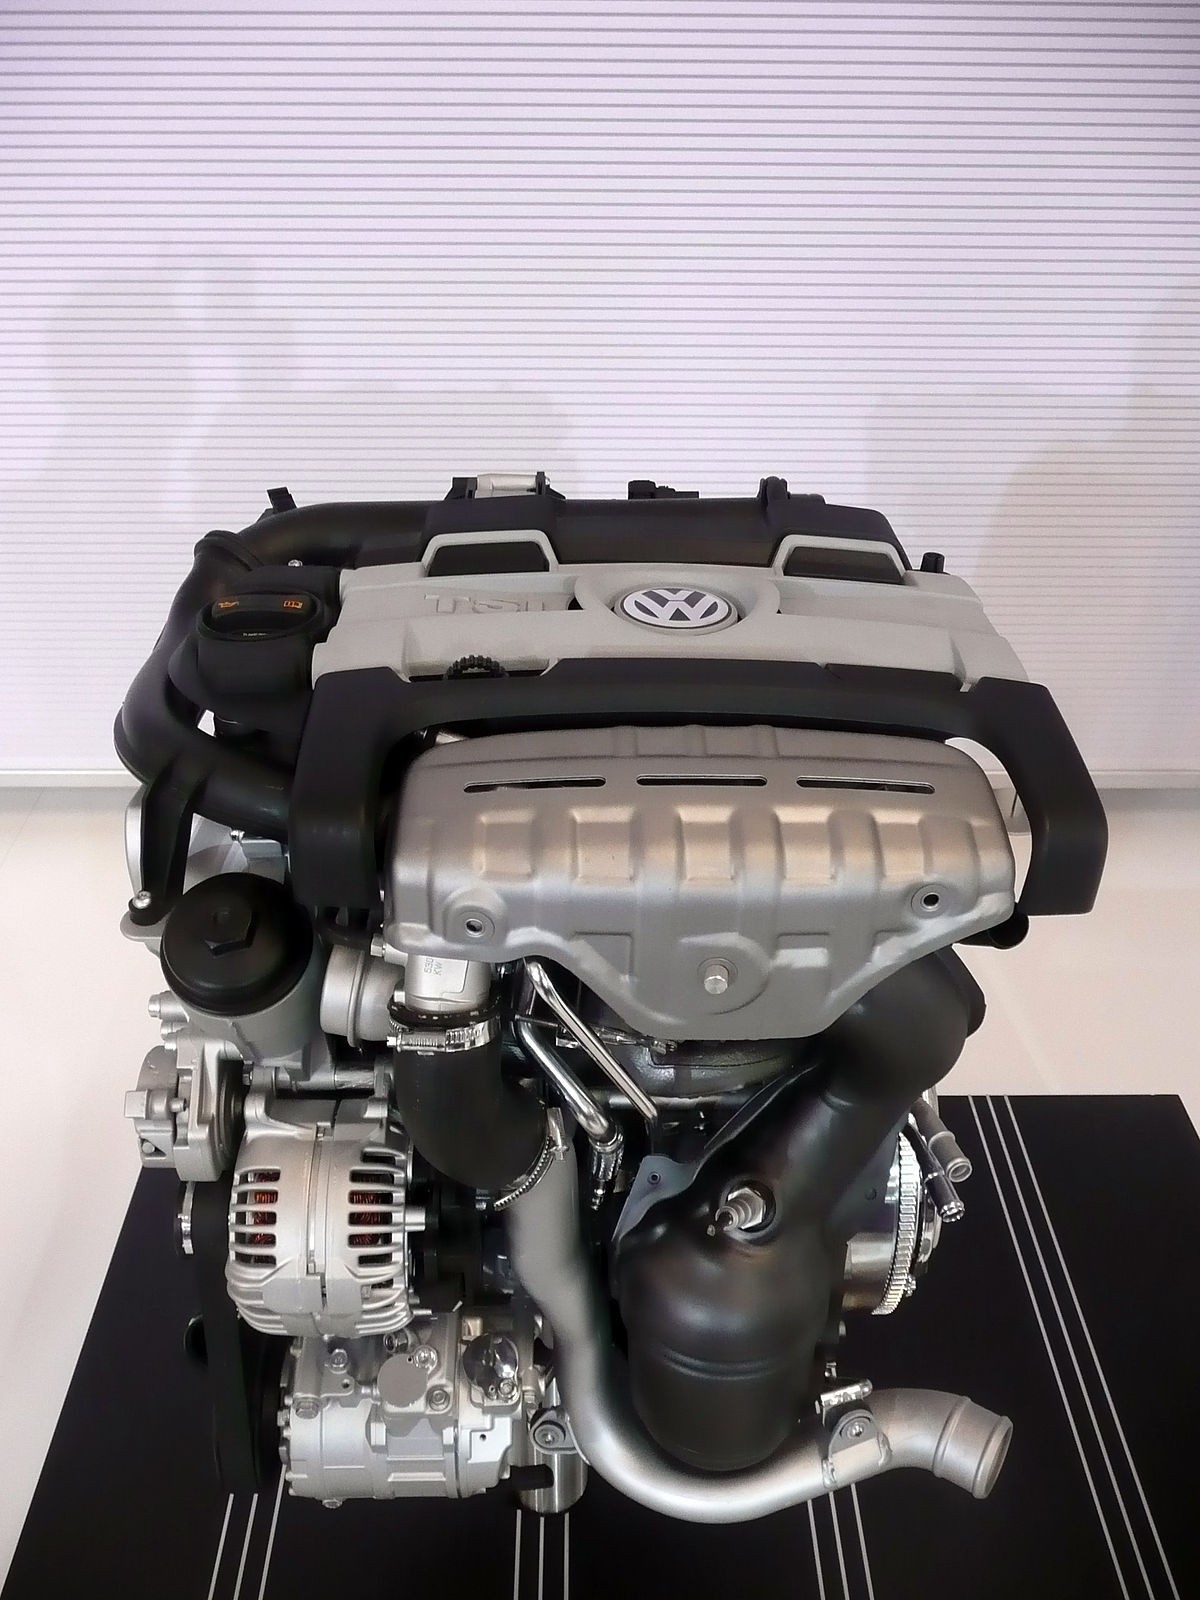 Diagram Of A 2.0 Tsi Motor 2 0 Tsi Engine Diagram Of Diagram Of A 2.0 Tsi Motor